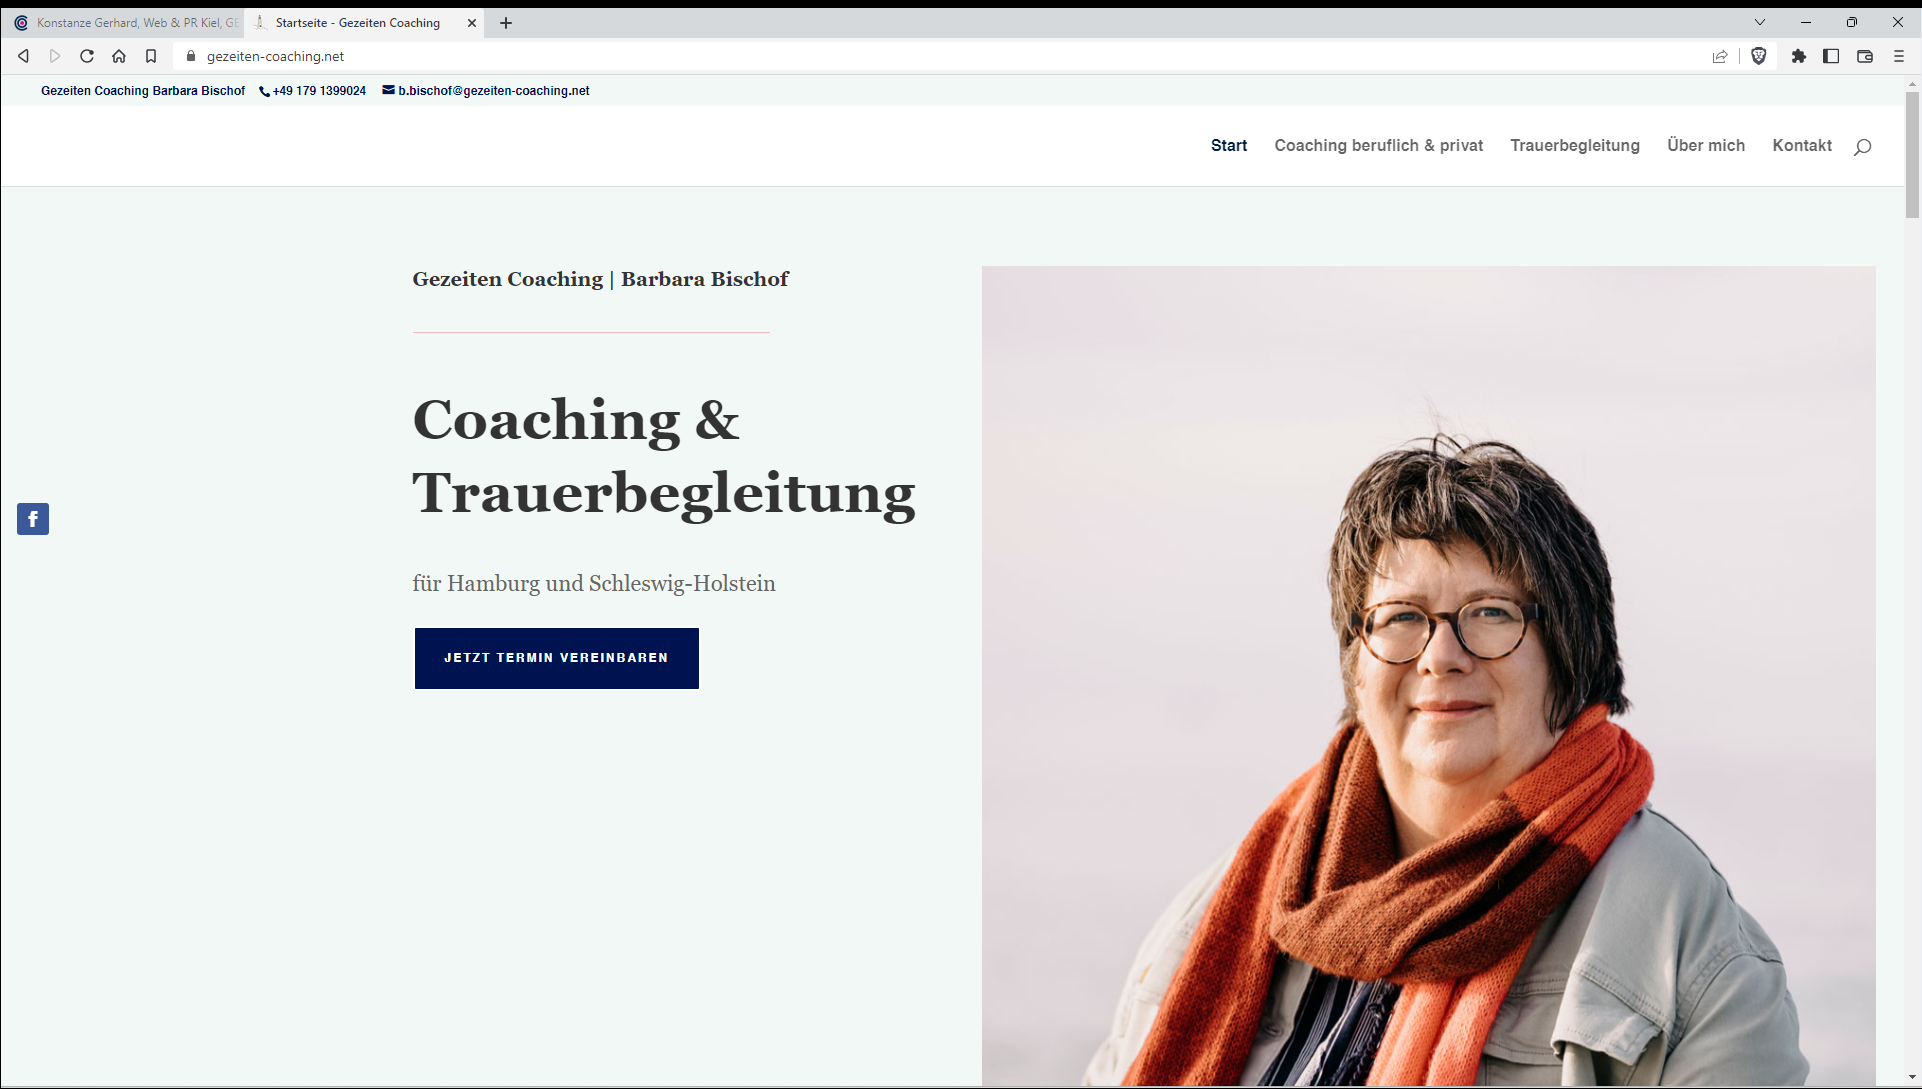 Gezeiten Coaching | Barbara Bischof - Coaching & Trauerbegleitung für Hamburg und Schleswig-Holstein